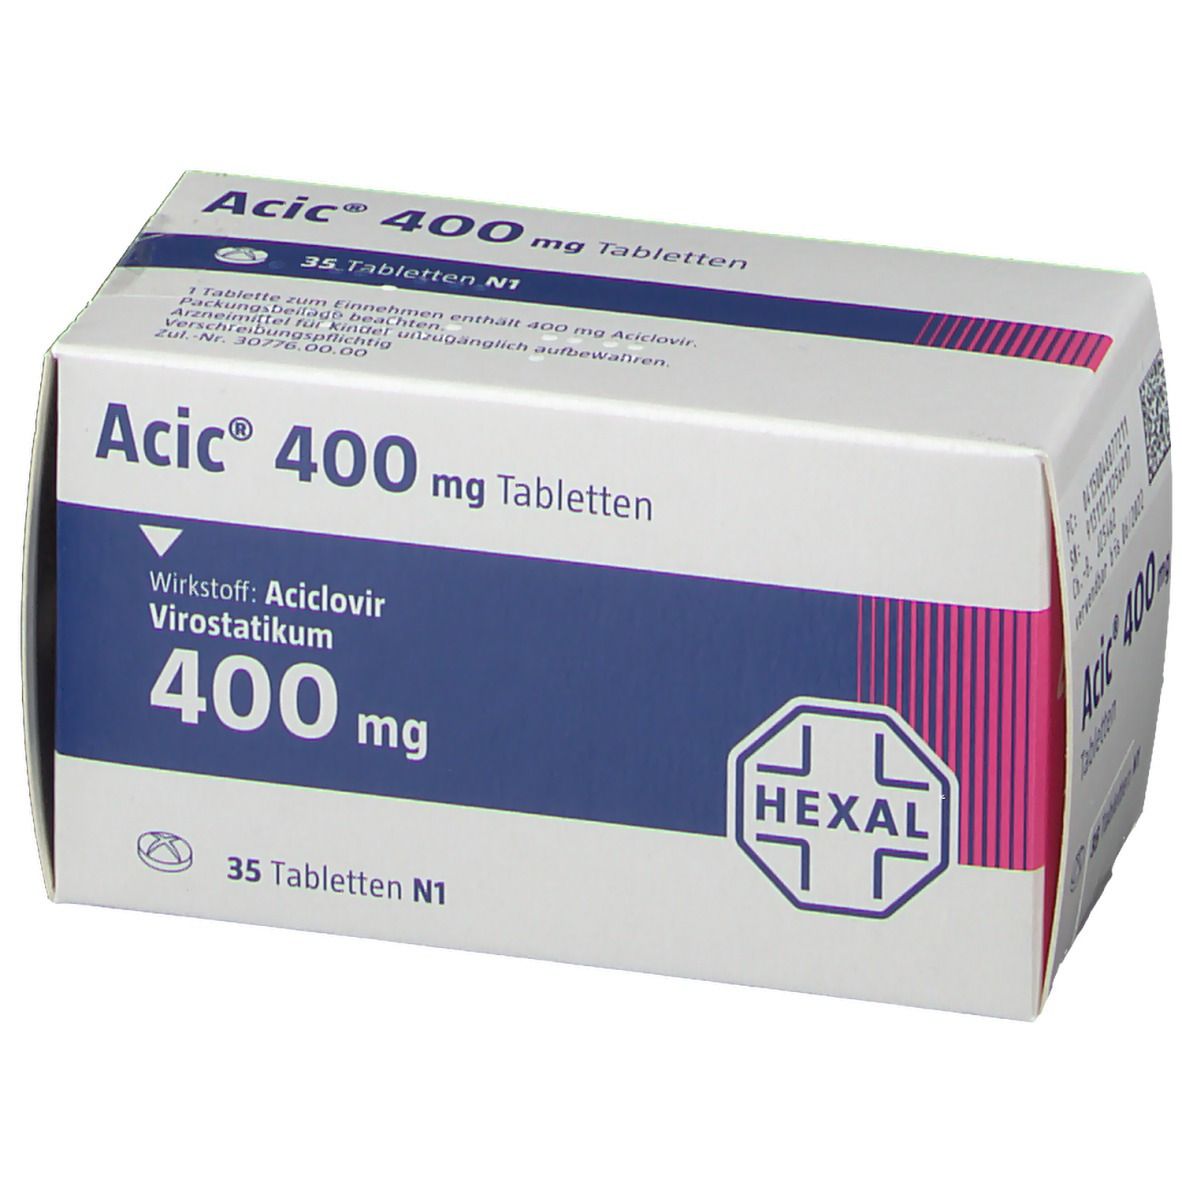 Acic® 400 mg